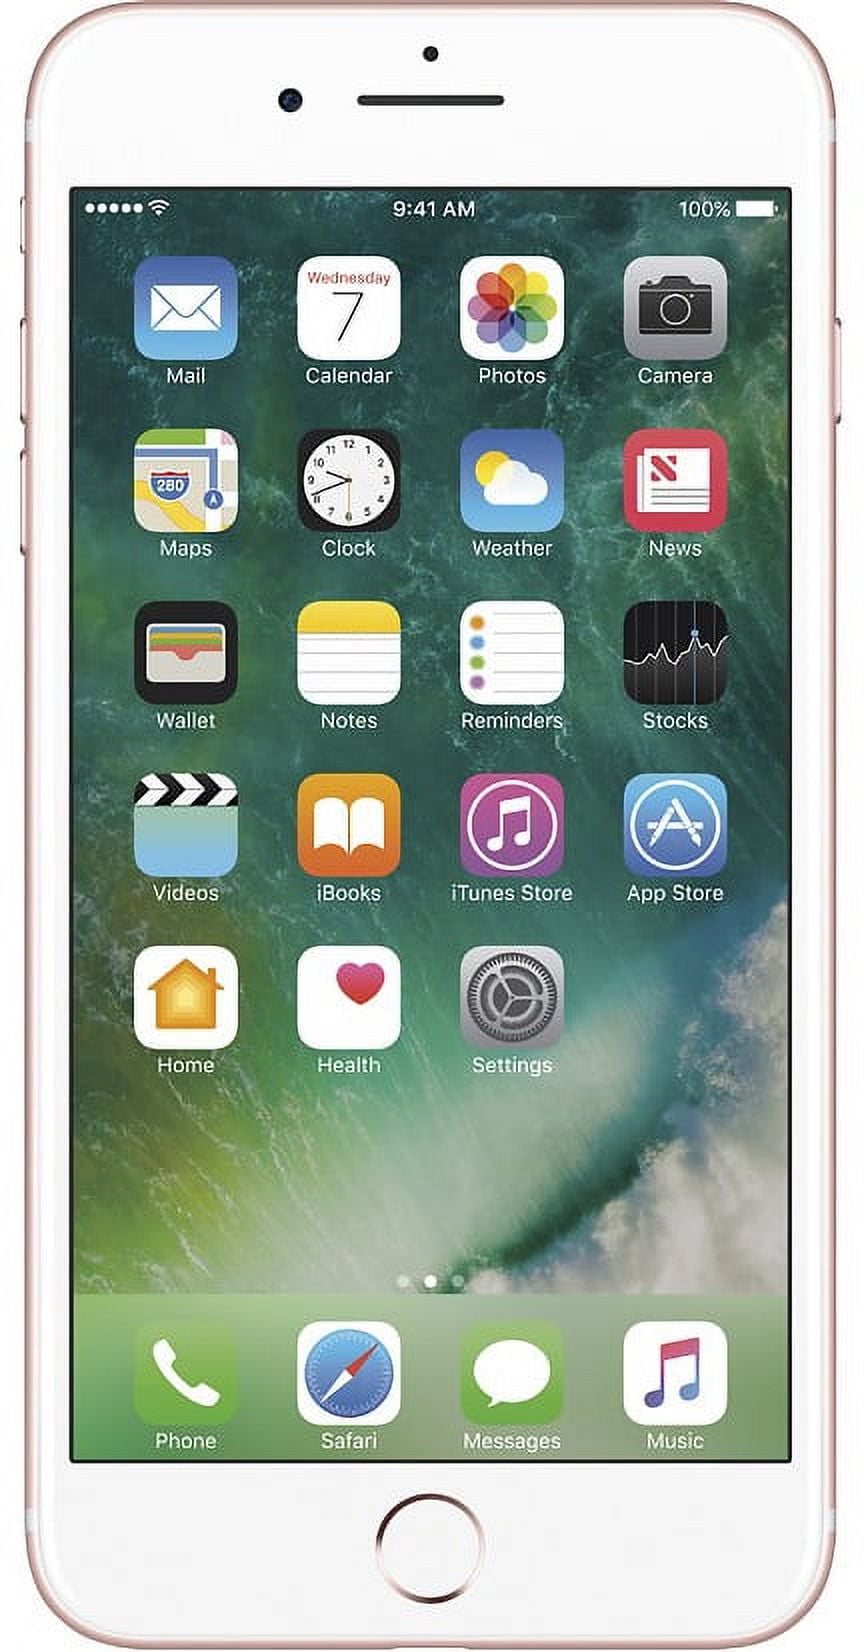 iPhone 7 Plus 128Go rouge reconditionné